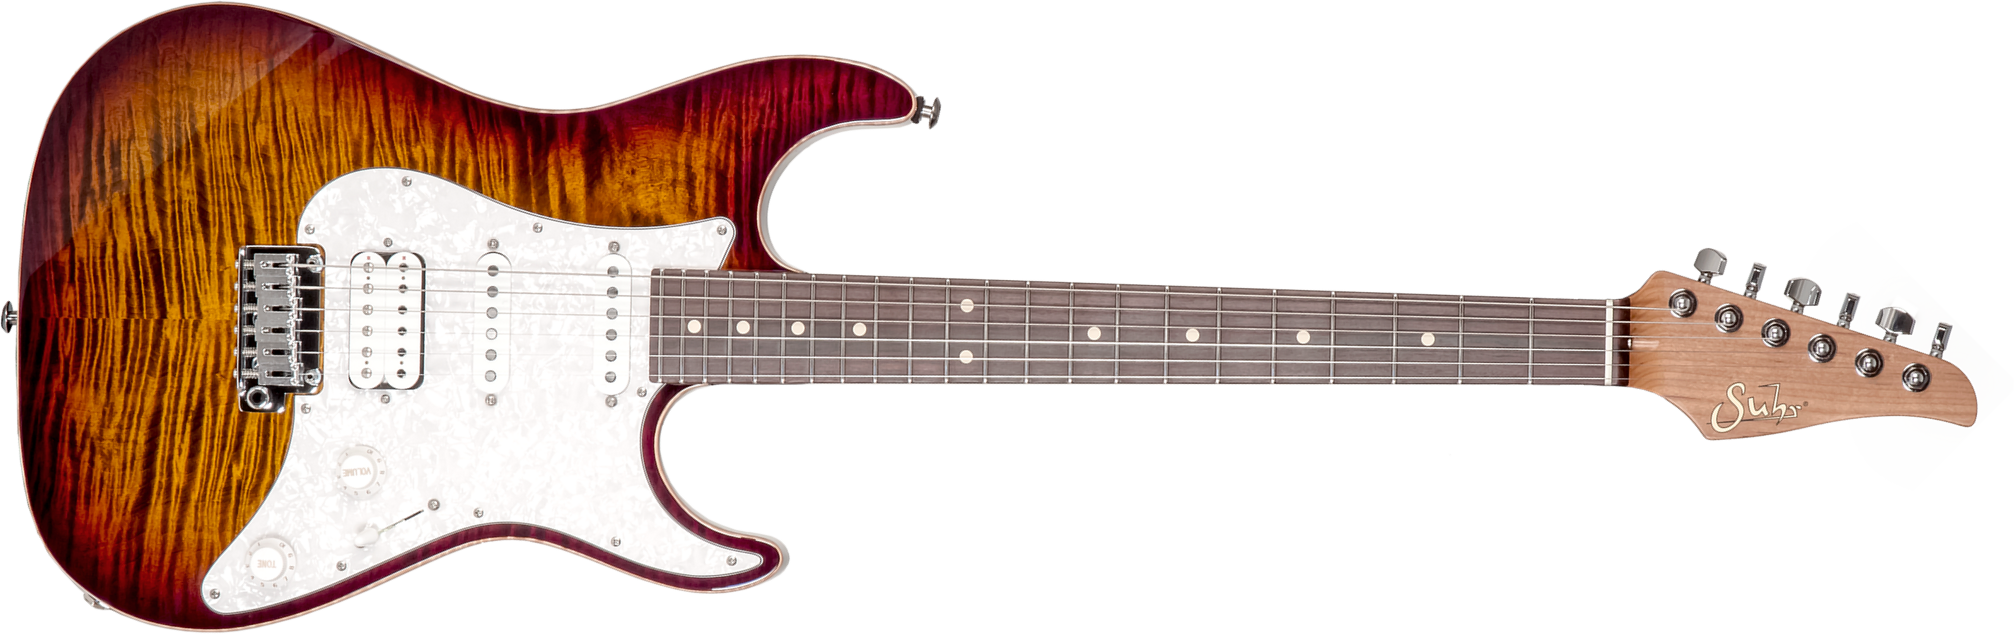 Suhr Standard Plus Usa Hss Trem Pf #72959 - Bengal Burst - Guitarra eléctrica con forma de str. - Main picture